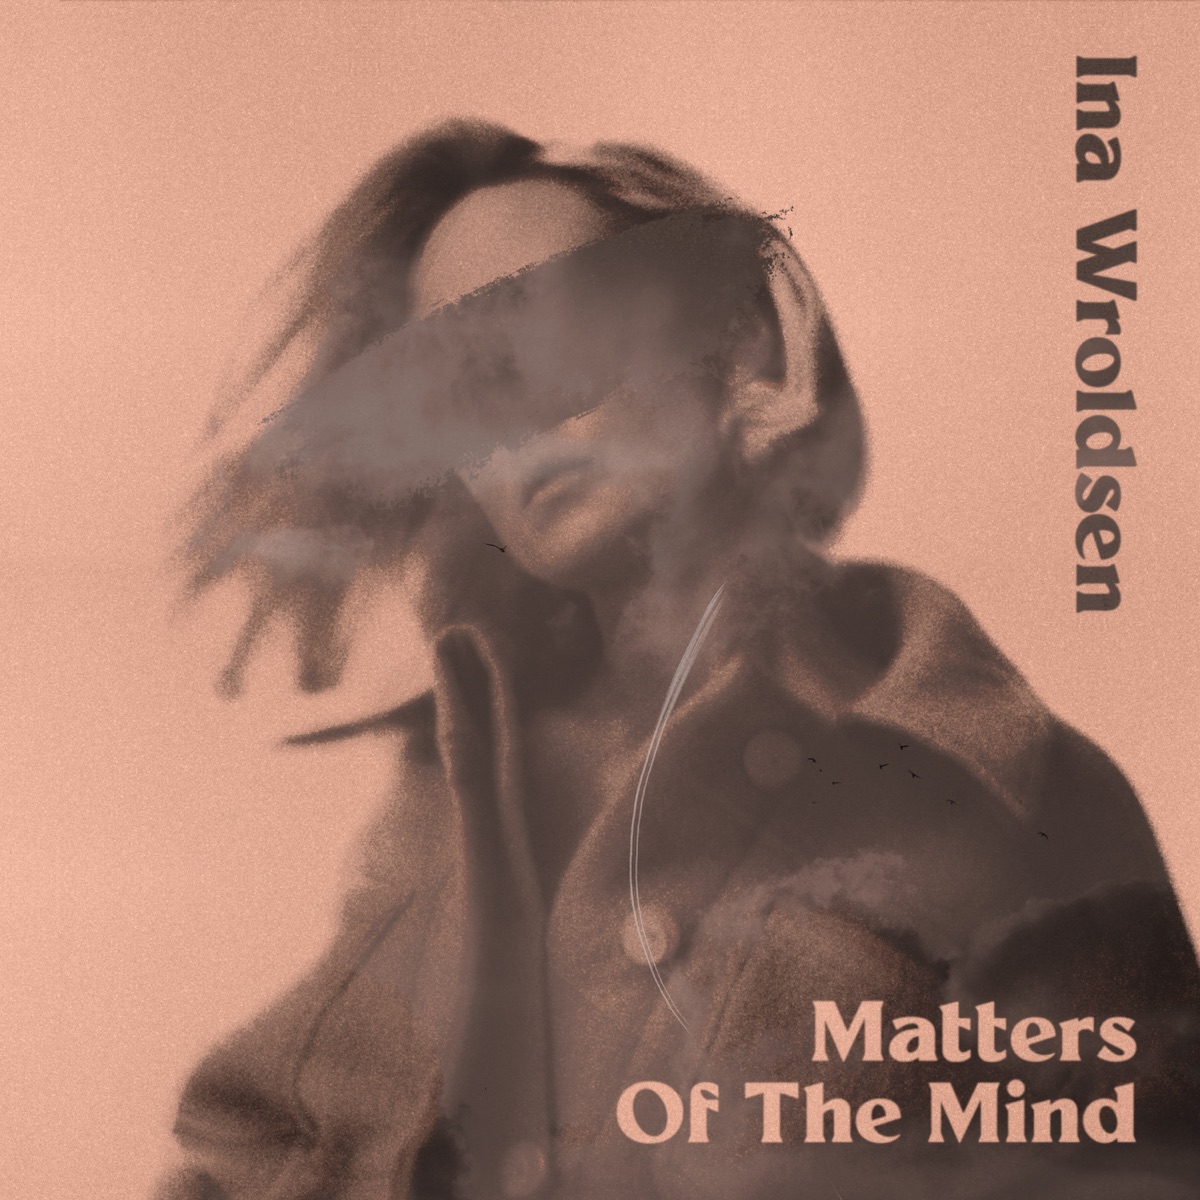 Ina Wroldsen - Strongest (Alan Walker Remix)